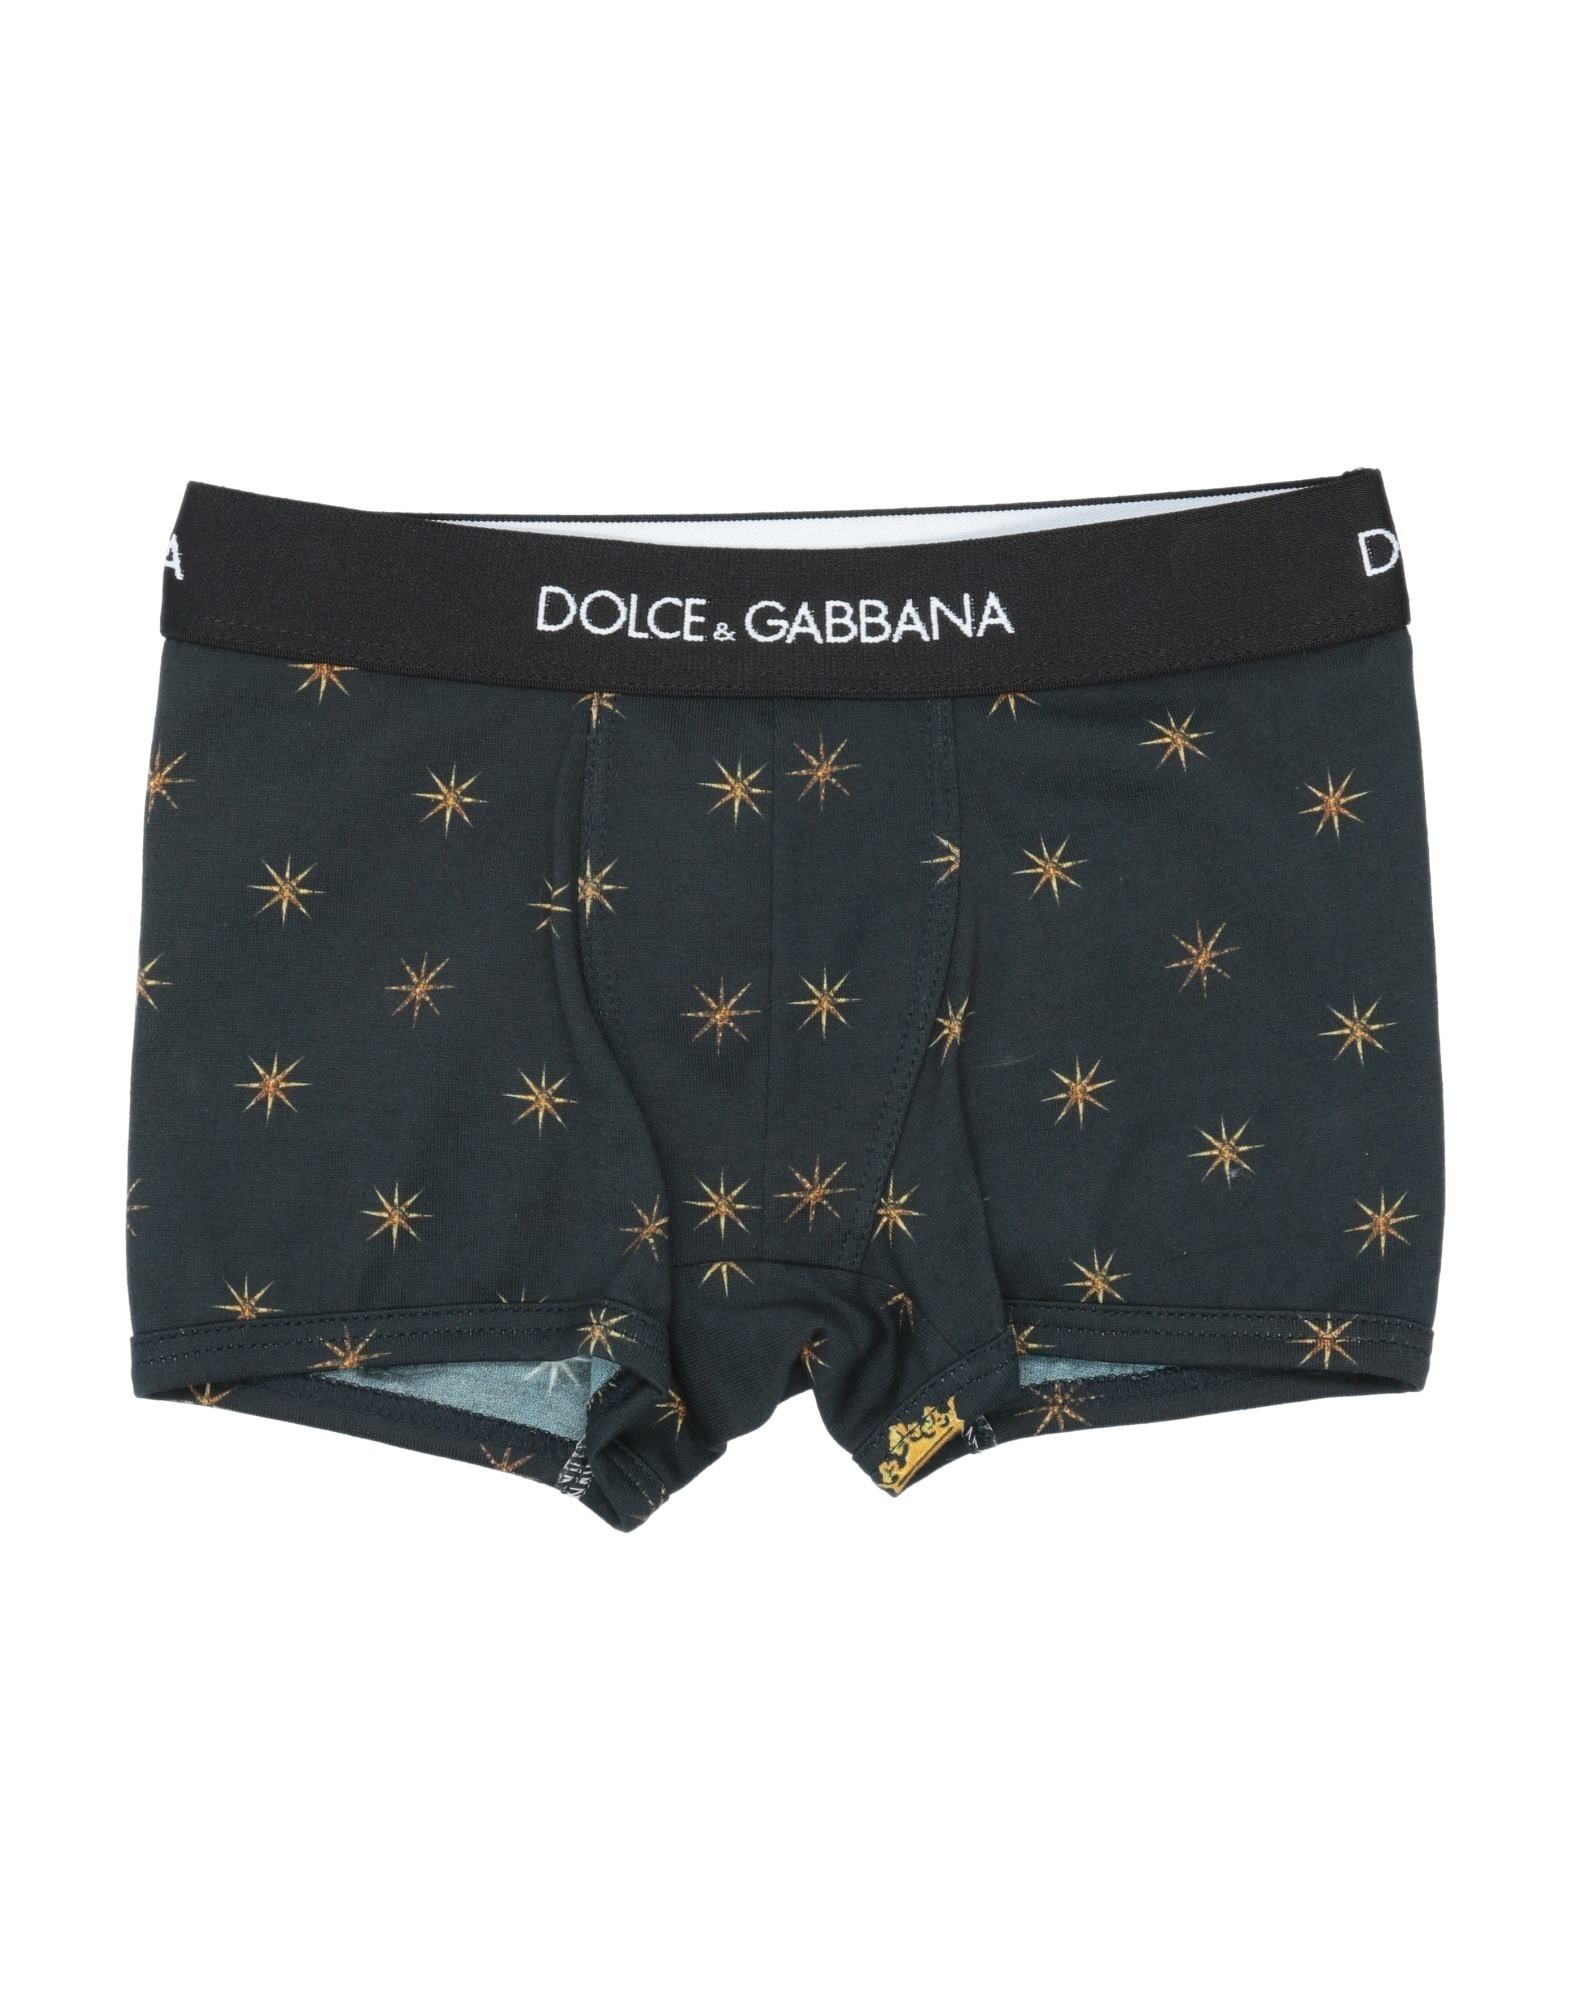 Dolce & Gabbana Kids' Boxers In Black